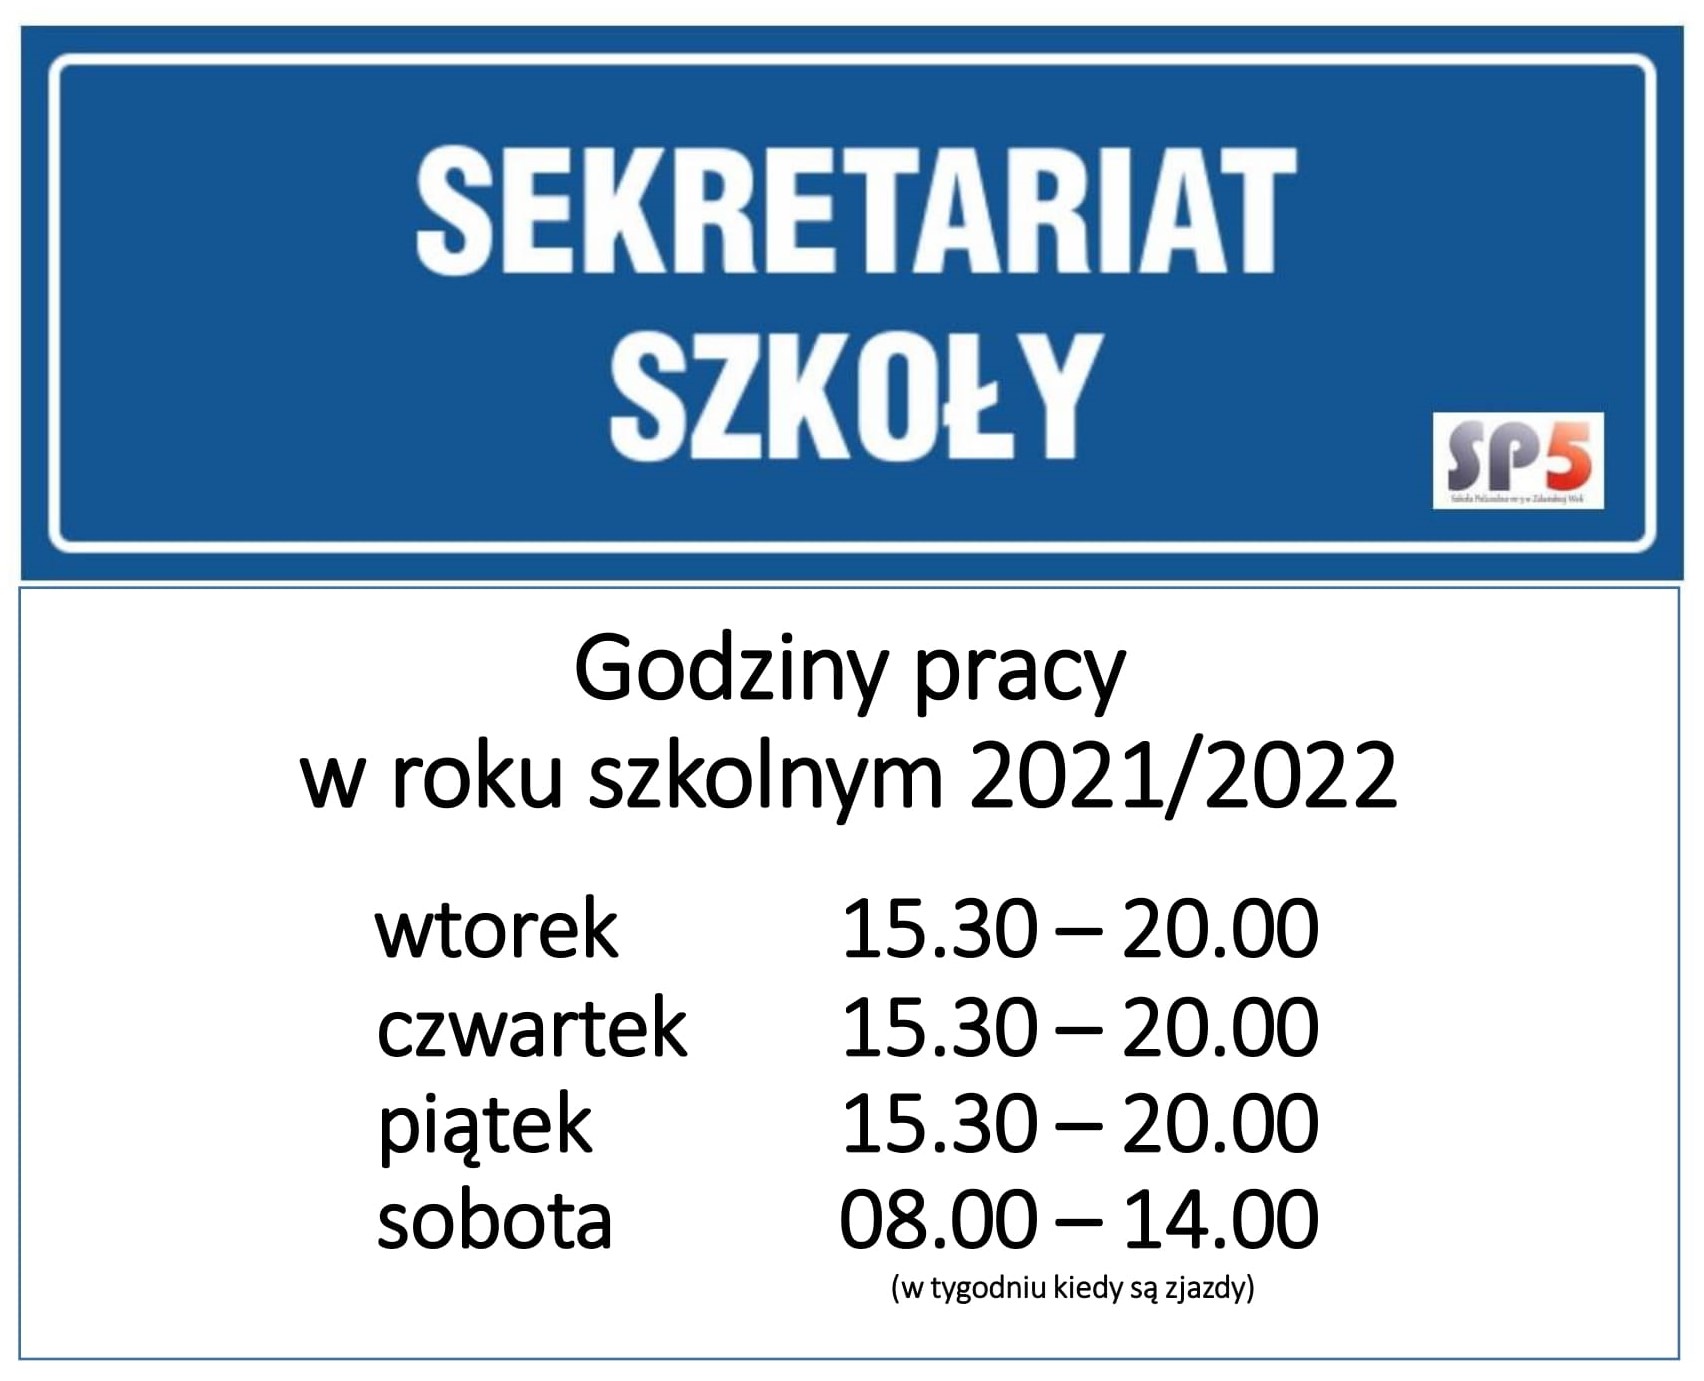 Sekretariat szkoły, godziny pracy w roku szkolnym 2021/2022, wtorek 15:30 - 20:00, czwartek 15:30 - 20:00, piątek 15:30 - 20:00, sobota 08:00 - 14:00 (w tygodniu kiedy są zjazdy)